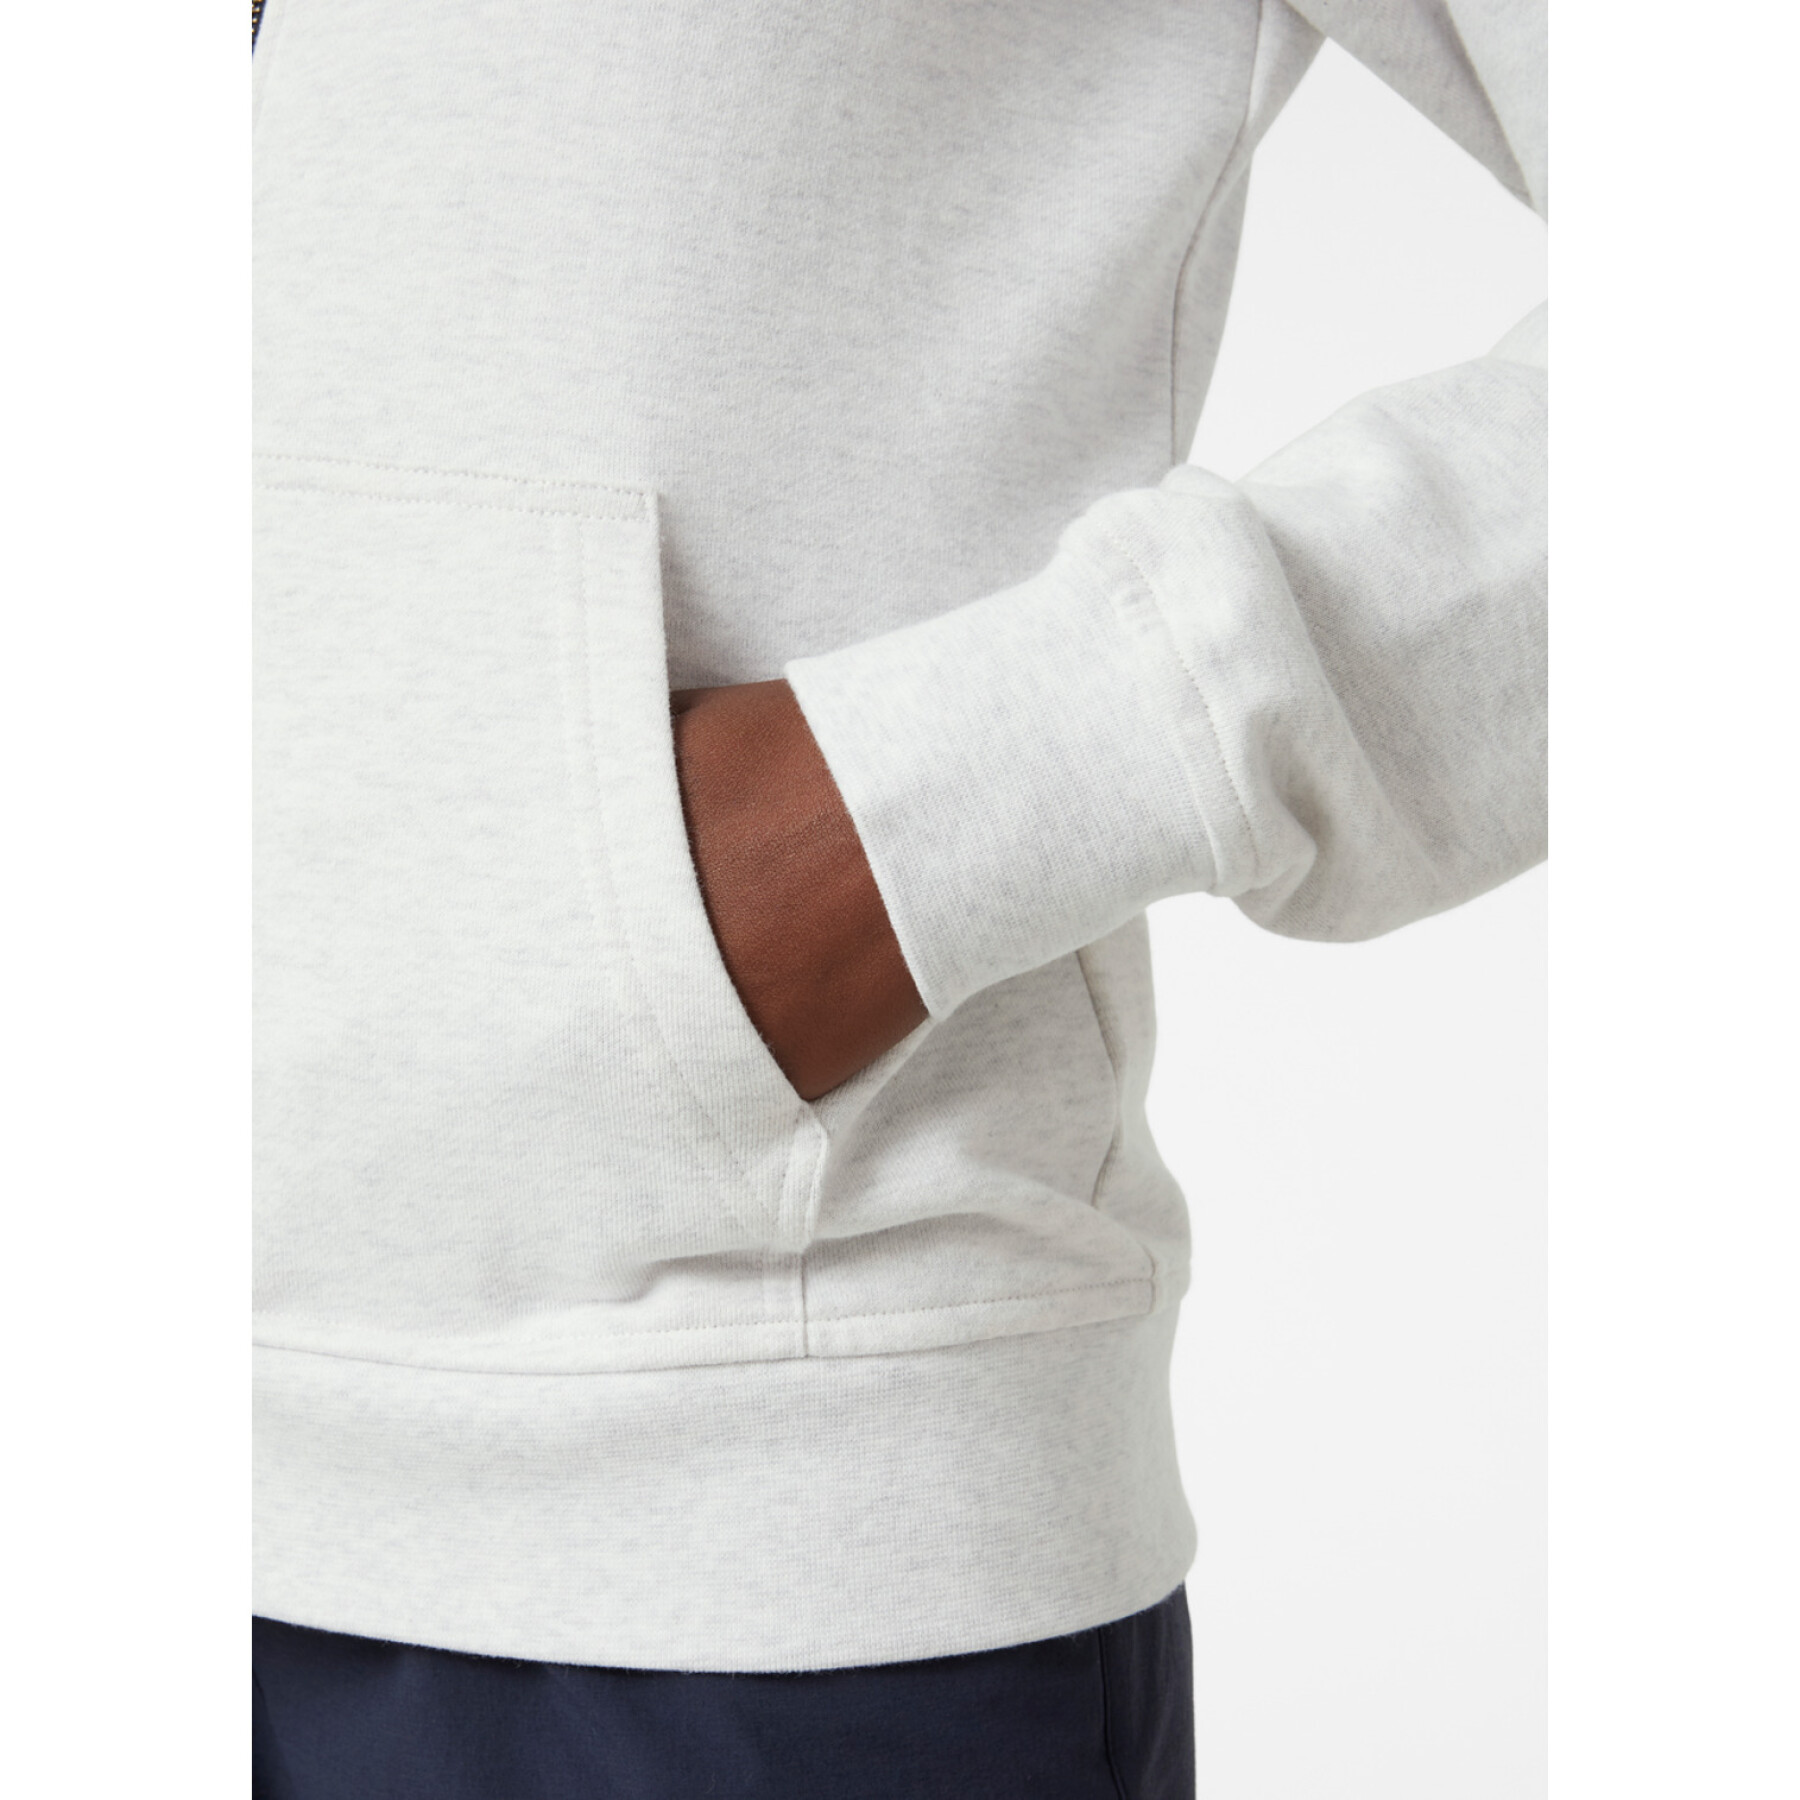 Damen-Sweatshirt mit Reißverschluss und Kapuze Helly Hansen Logo